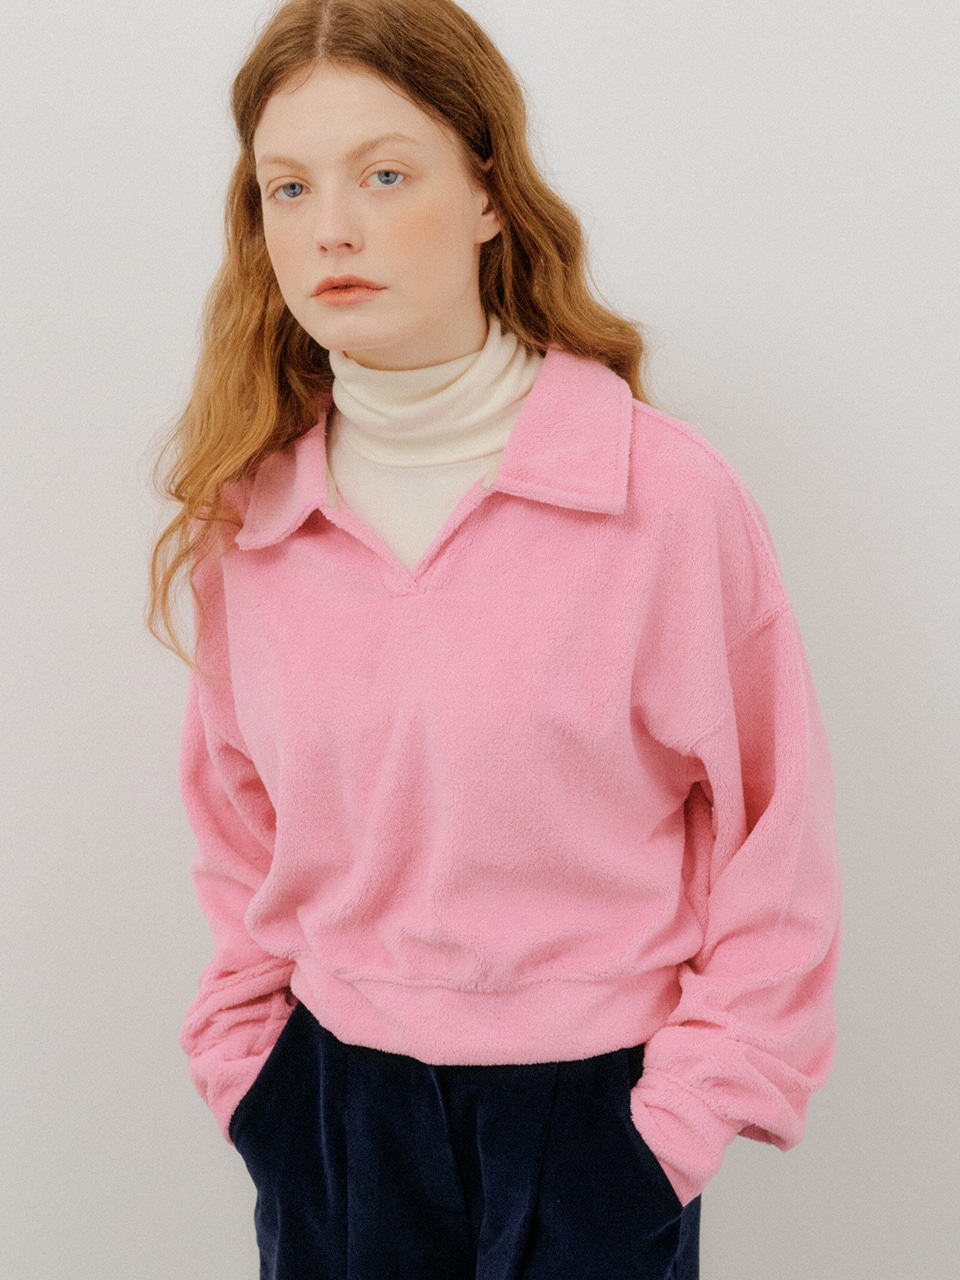 monts 1542 open collar terri sweatshirt (pink)